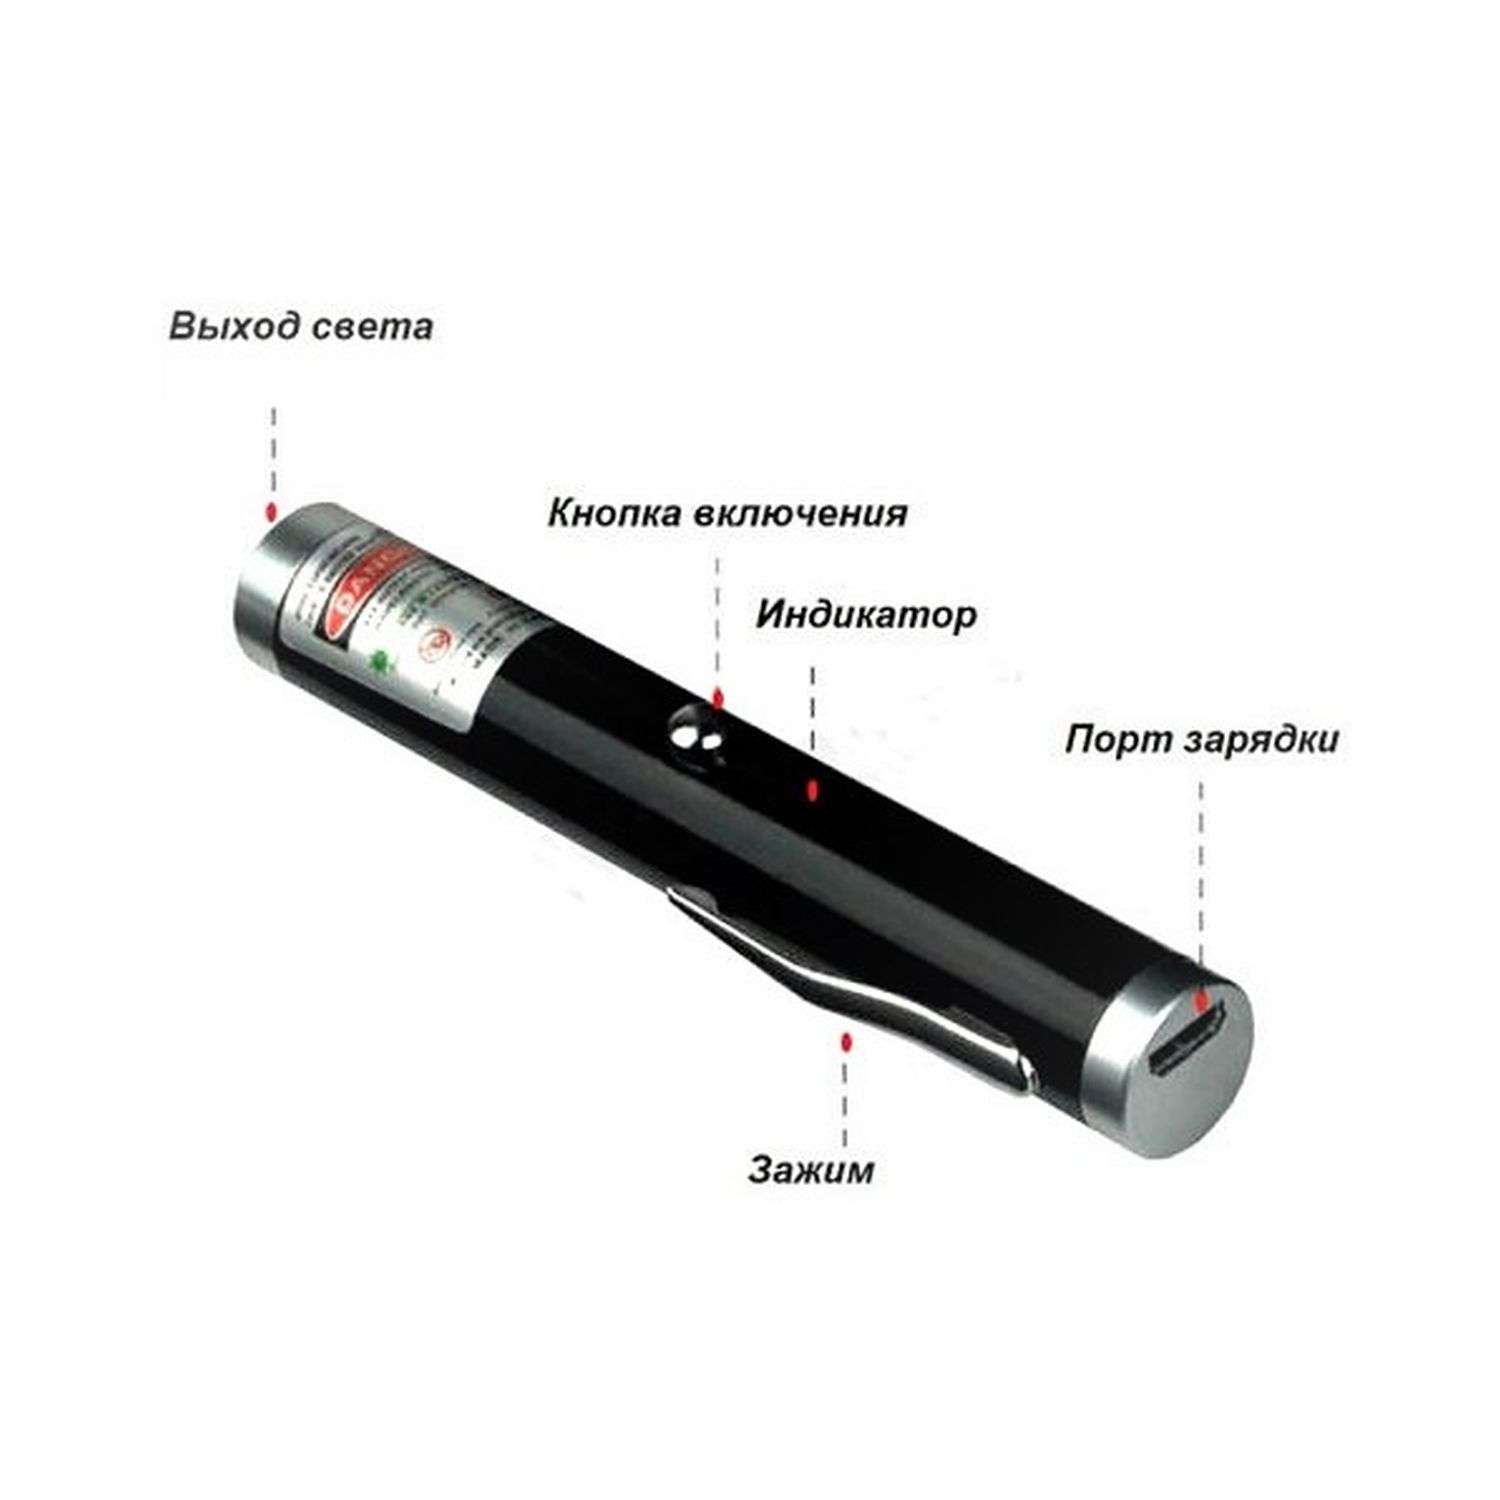 Лазерная указка Uniglodis с USB-кабелем - фото 2